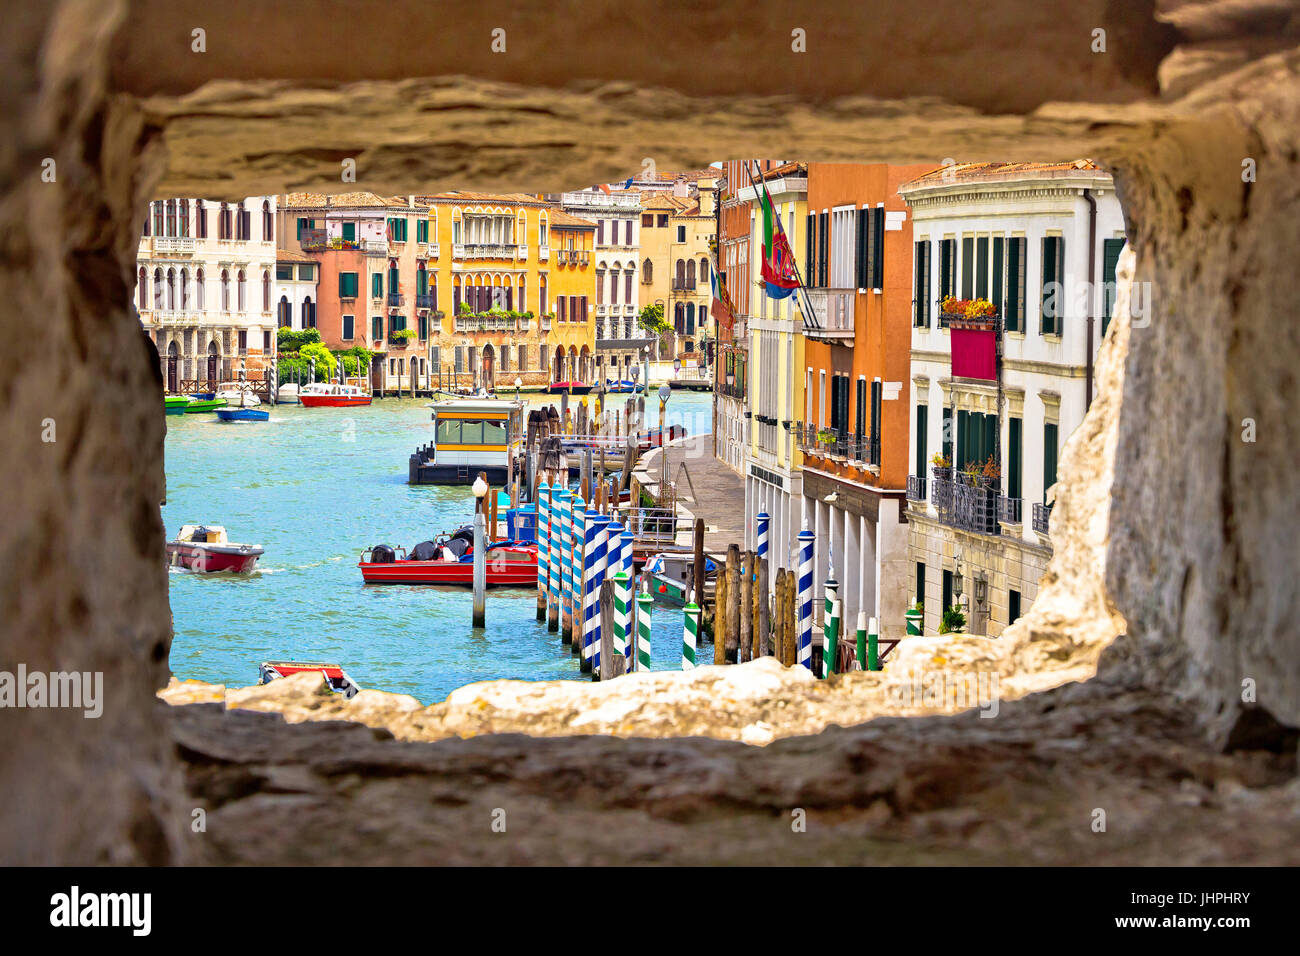 Canal Grande Venecia vista a través de la ventana de piedra, destino turístico en la región del Véneto, Itally Foto de stock